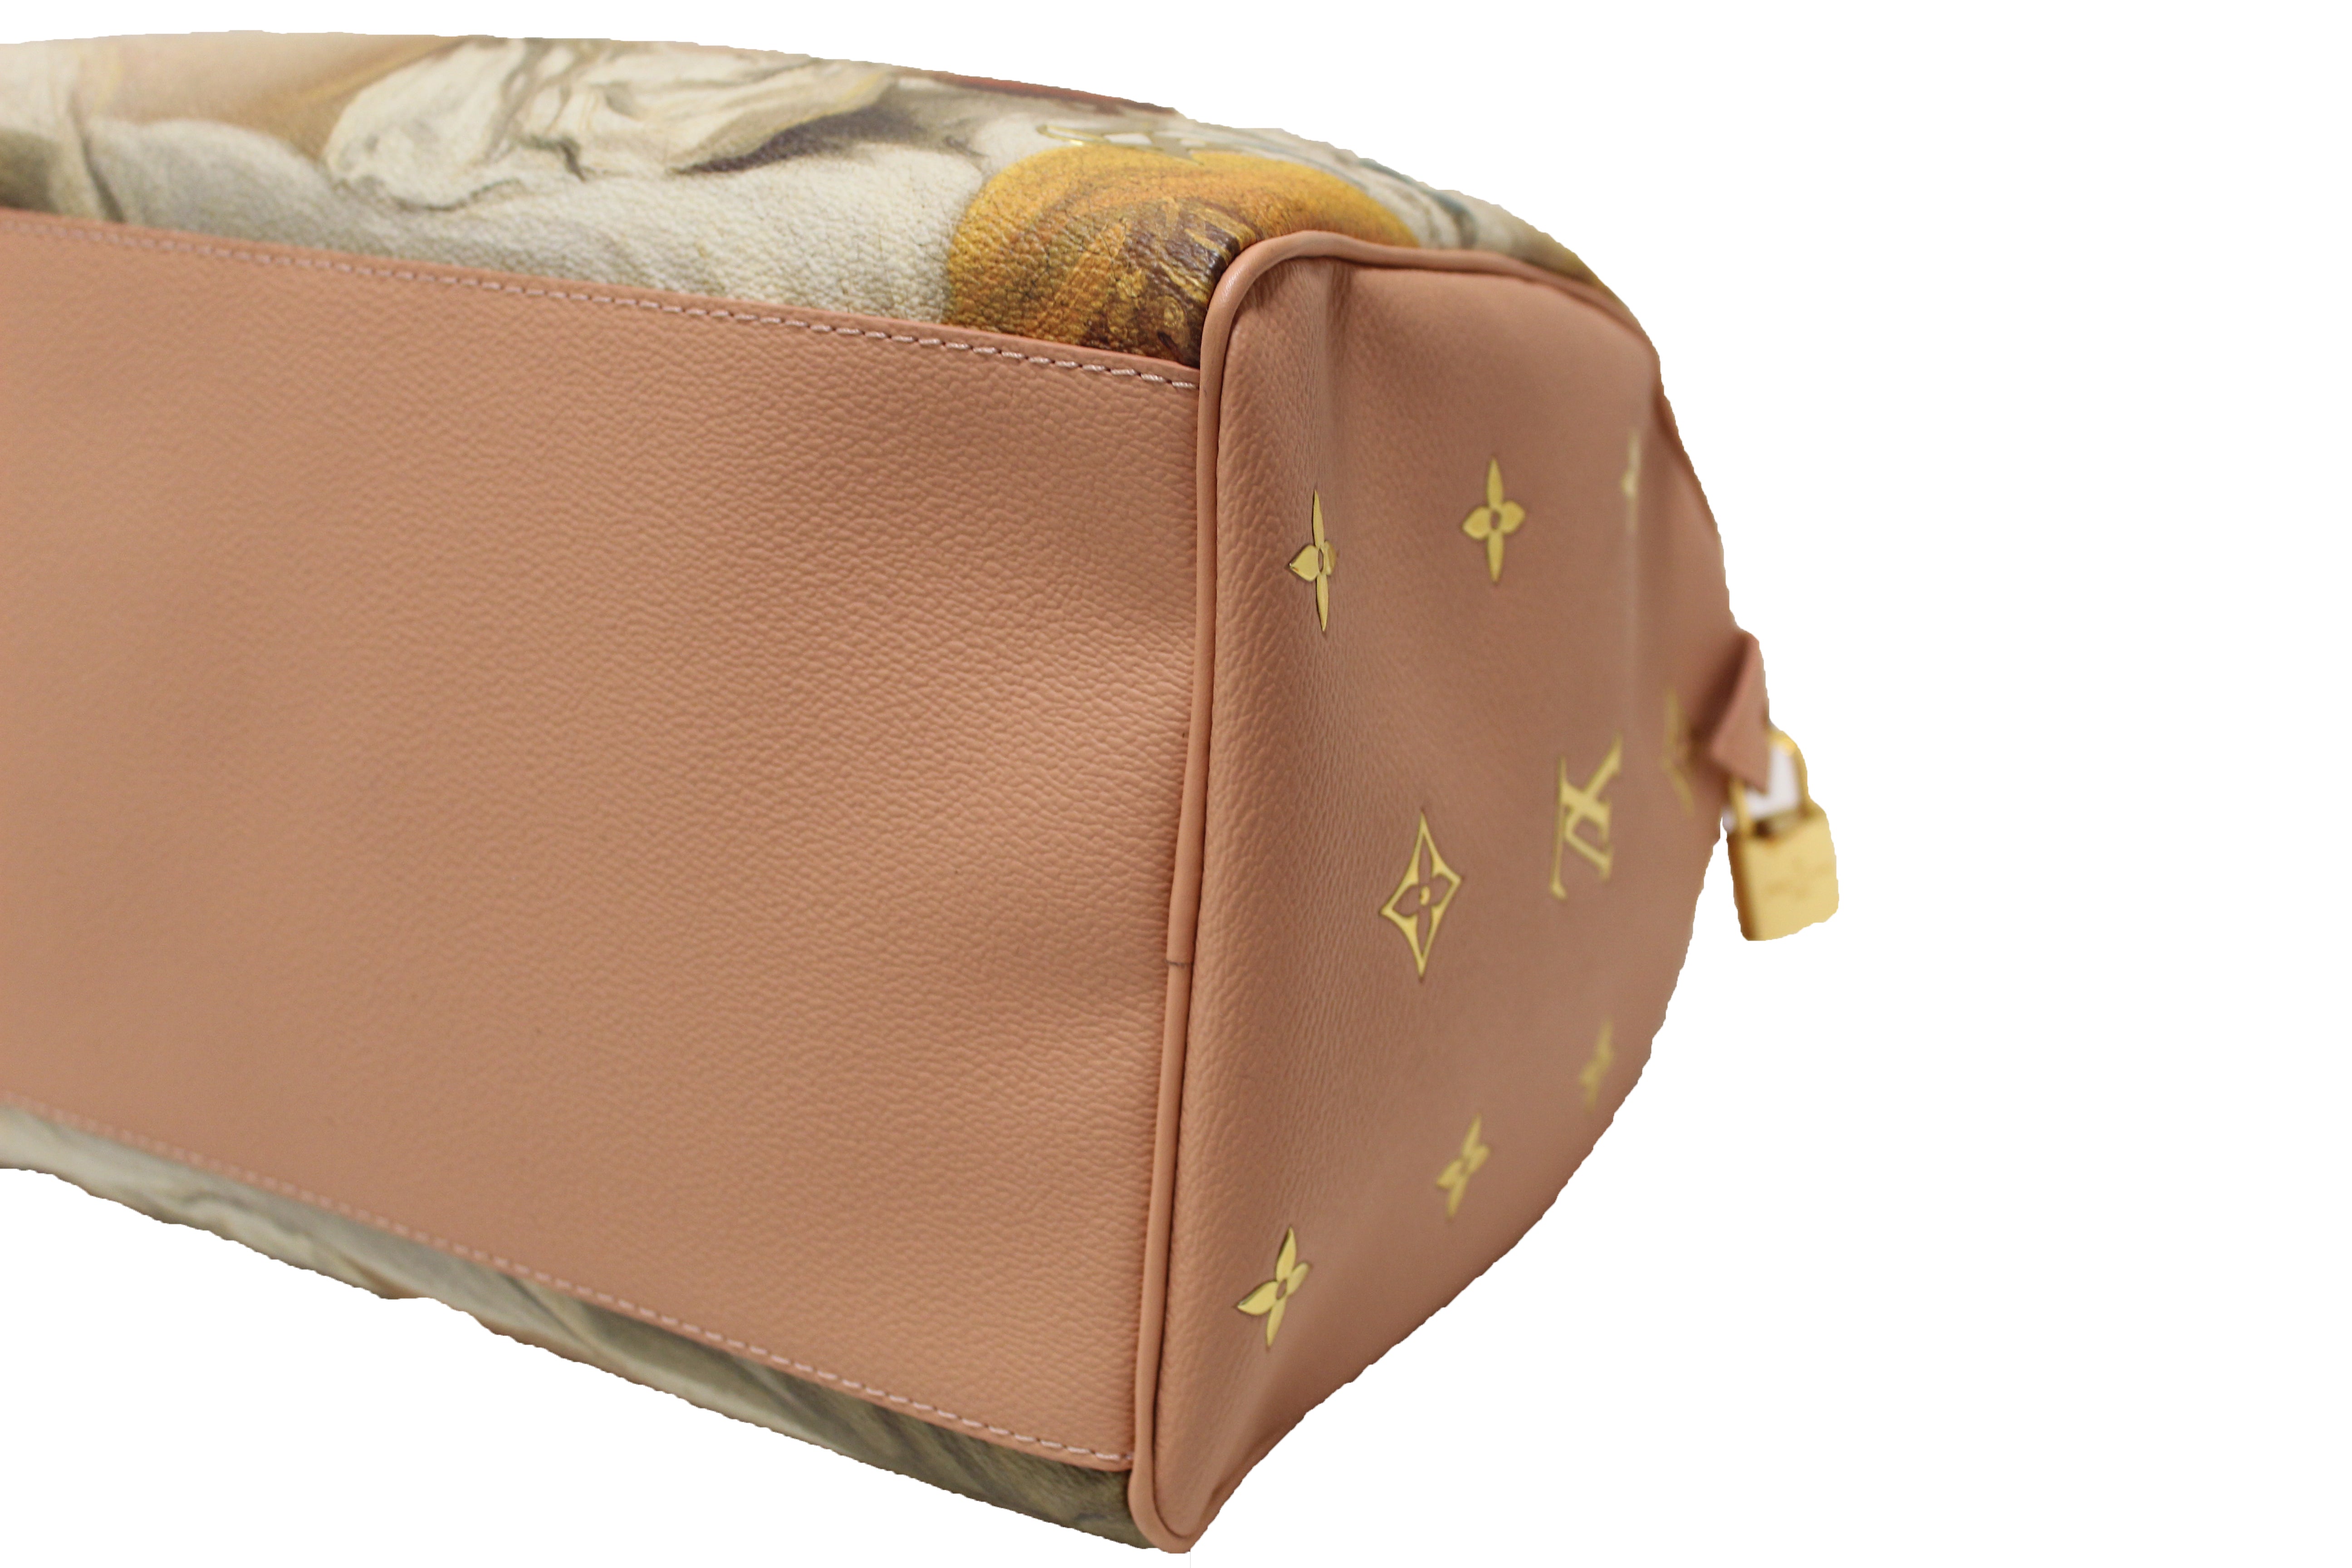 LOUIS VUITTON AUTH Marais MM Monogram Handbag Speedy +Box & Dust Bag  Receipt LV